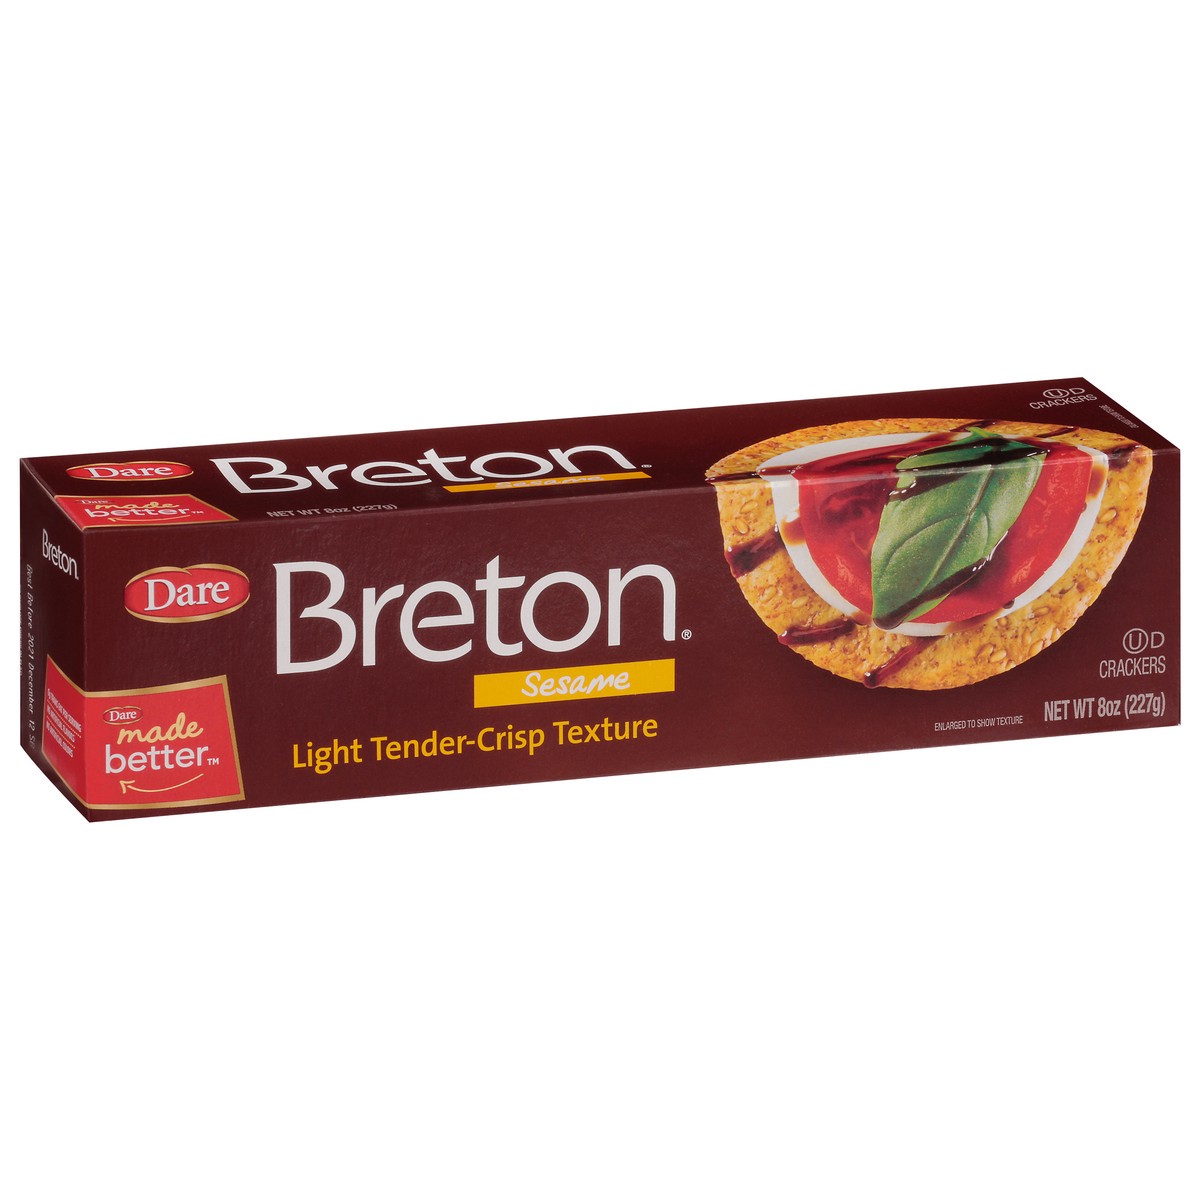 slide 10 of 14, Dare Breton Sesame Crackers, 8 oz